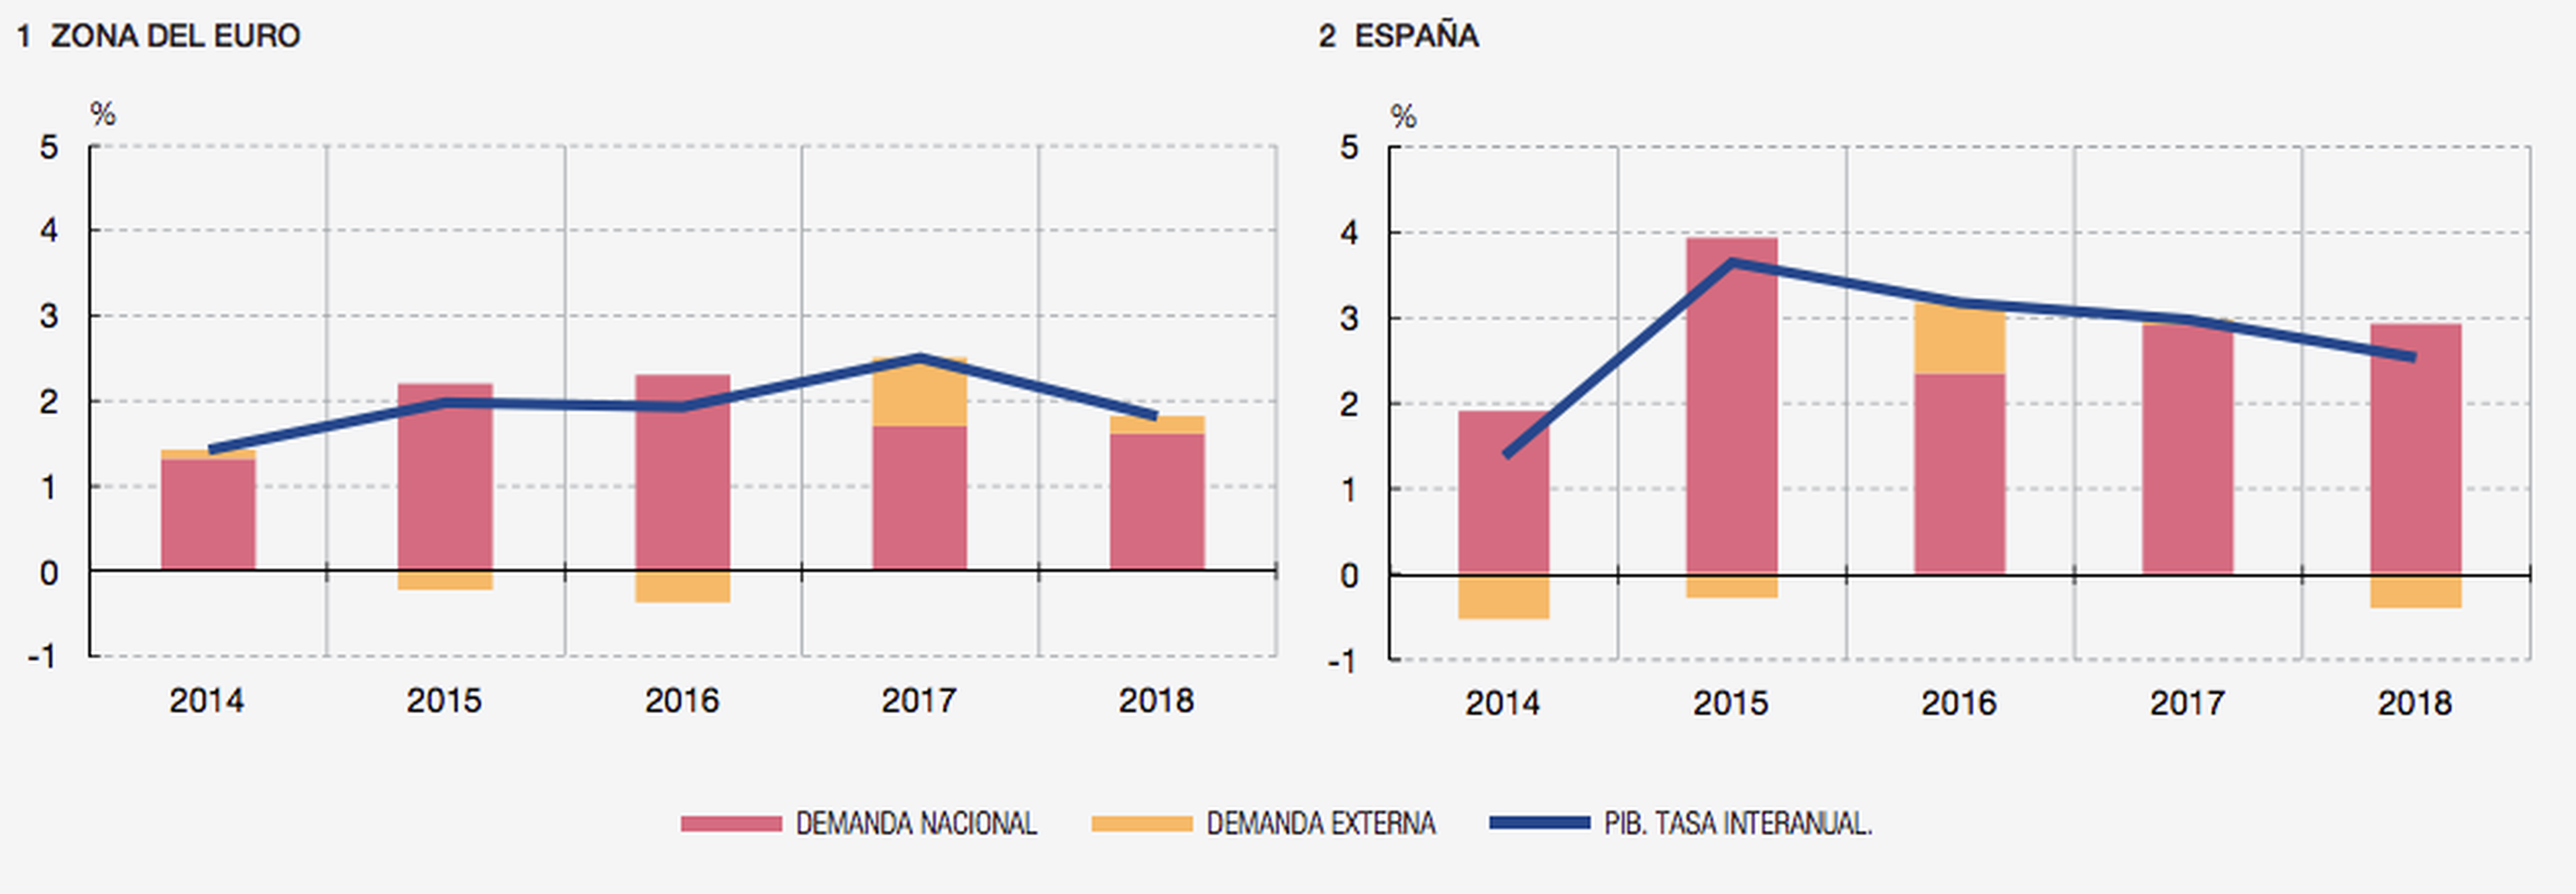 Crecimiento del PIB y componentes en la zona euro y España desde 2014